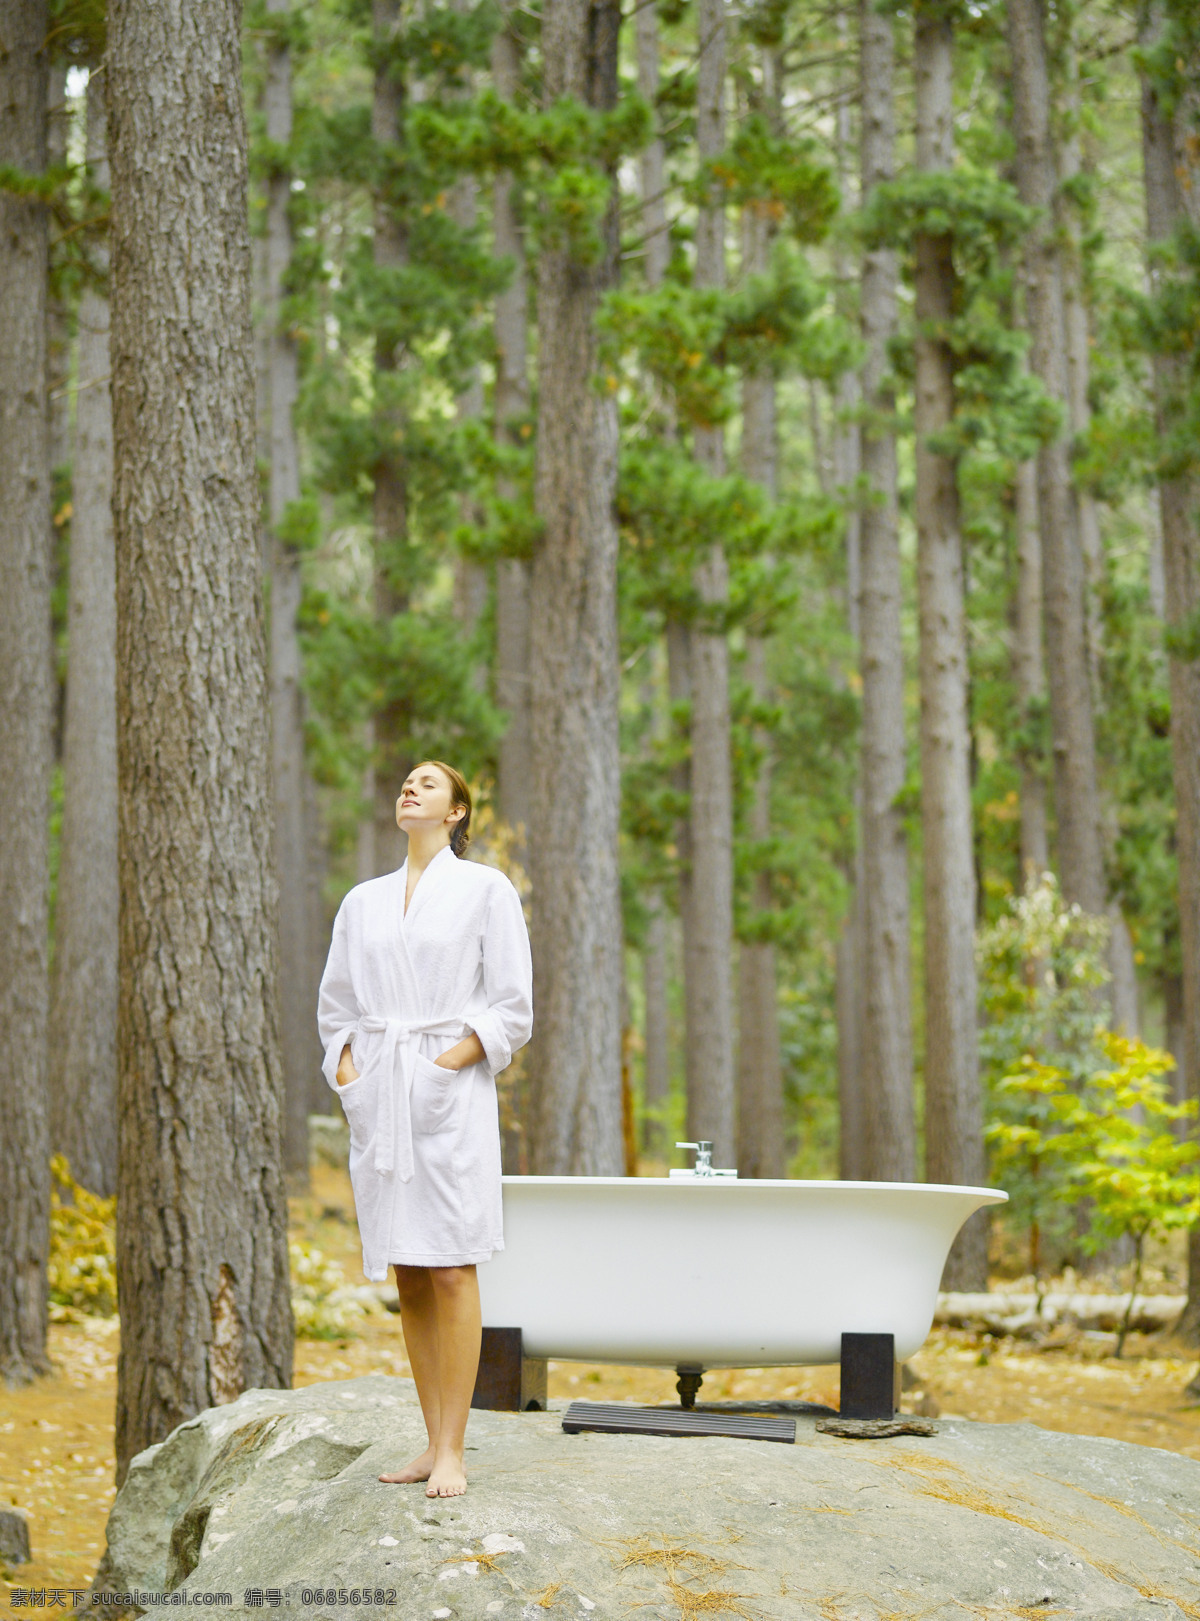 准备 洗澡 女人 户外 户外生活 人物 树林 自然 好环境 浴缸 深呼吸 放松 浴巾 站立 生活人物 人物图片